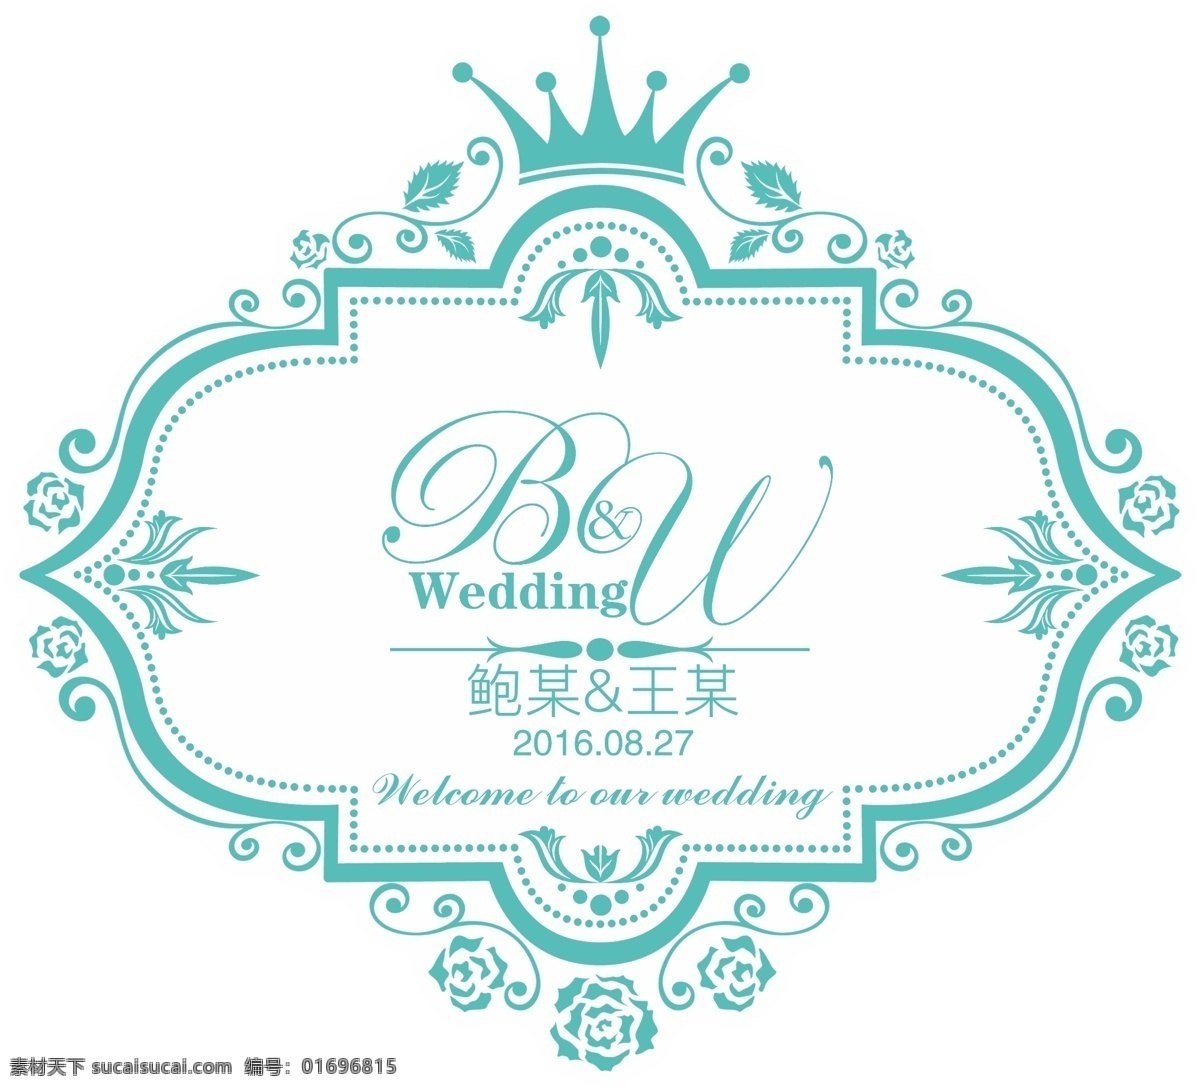 t蓝色 婚礼主题牌 bw字母设计 婚礼logo 欧式 花纹 logo 高清psd 分层图 分层